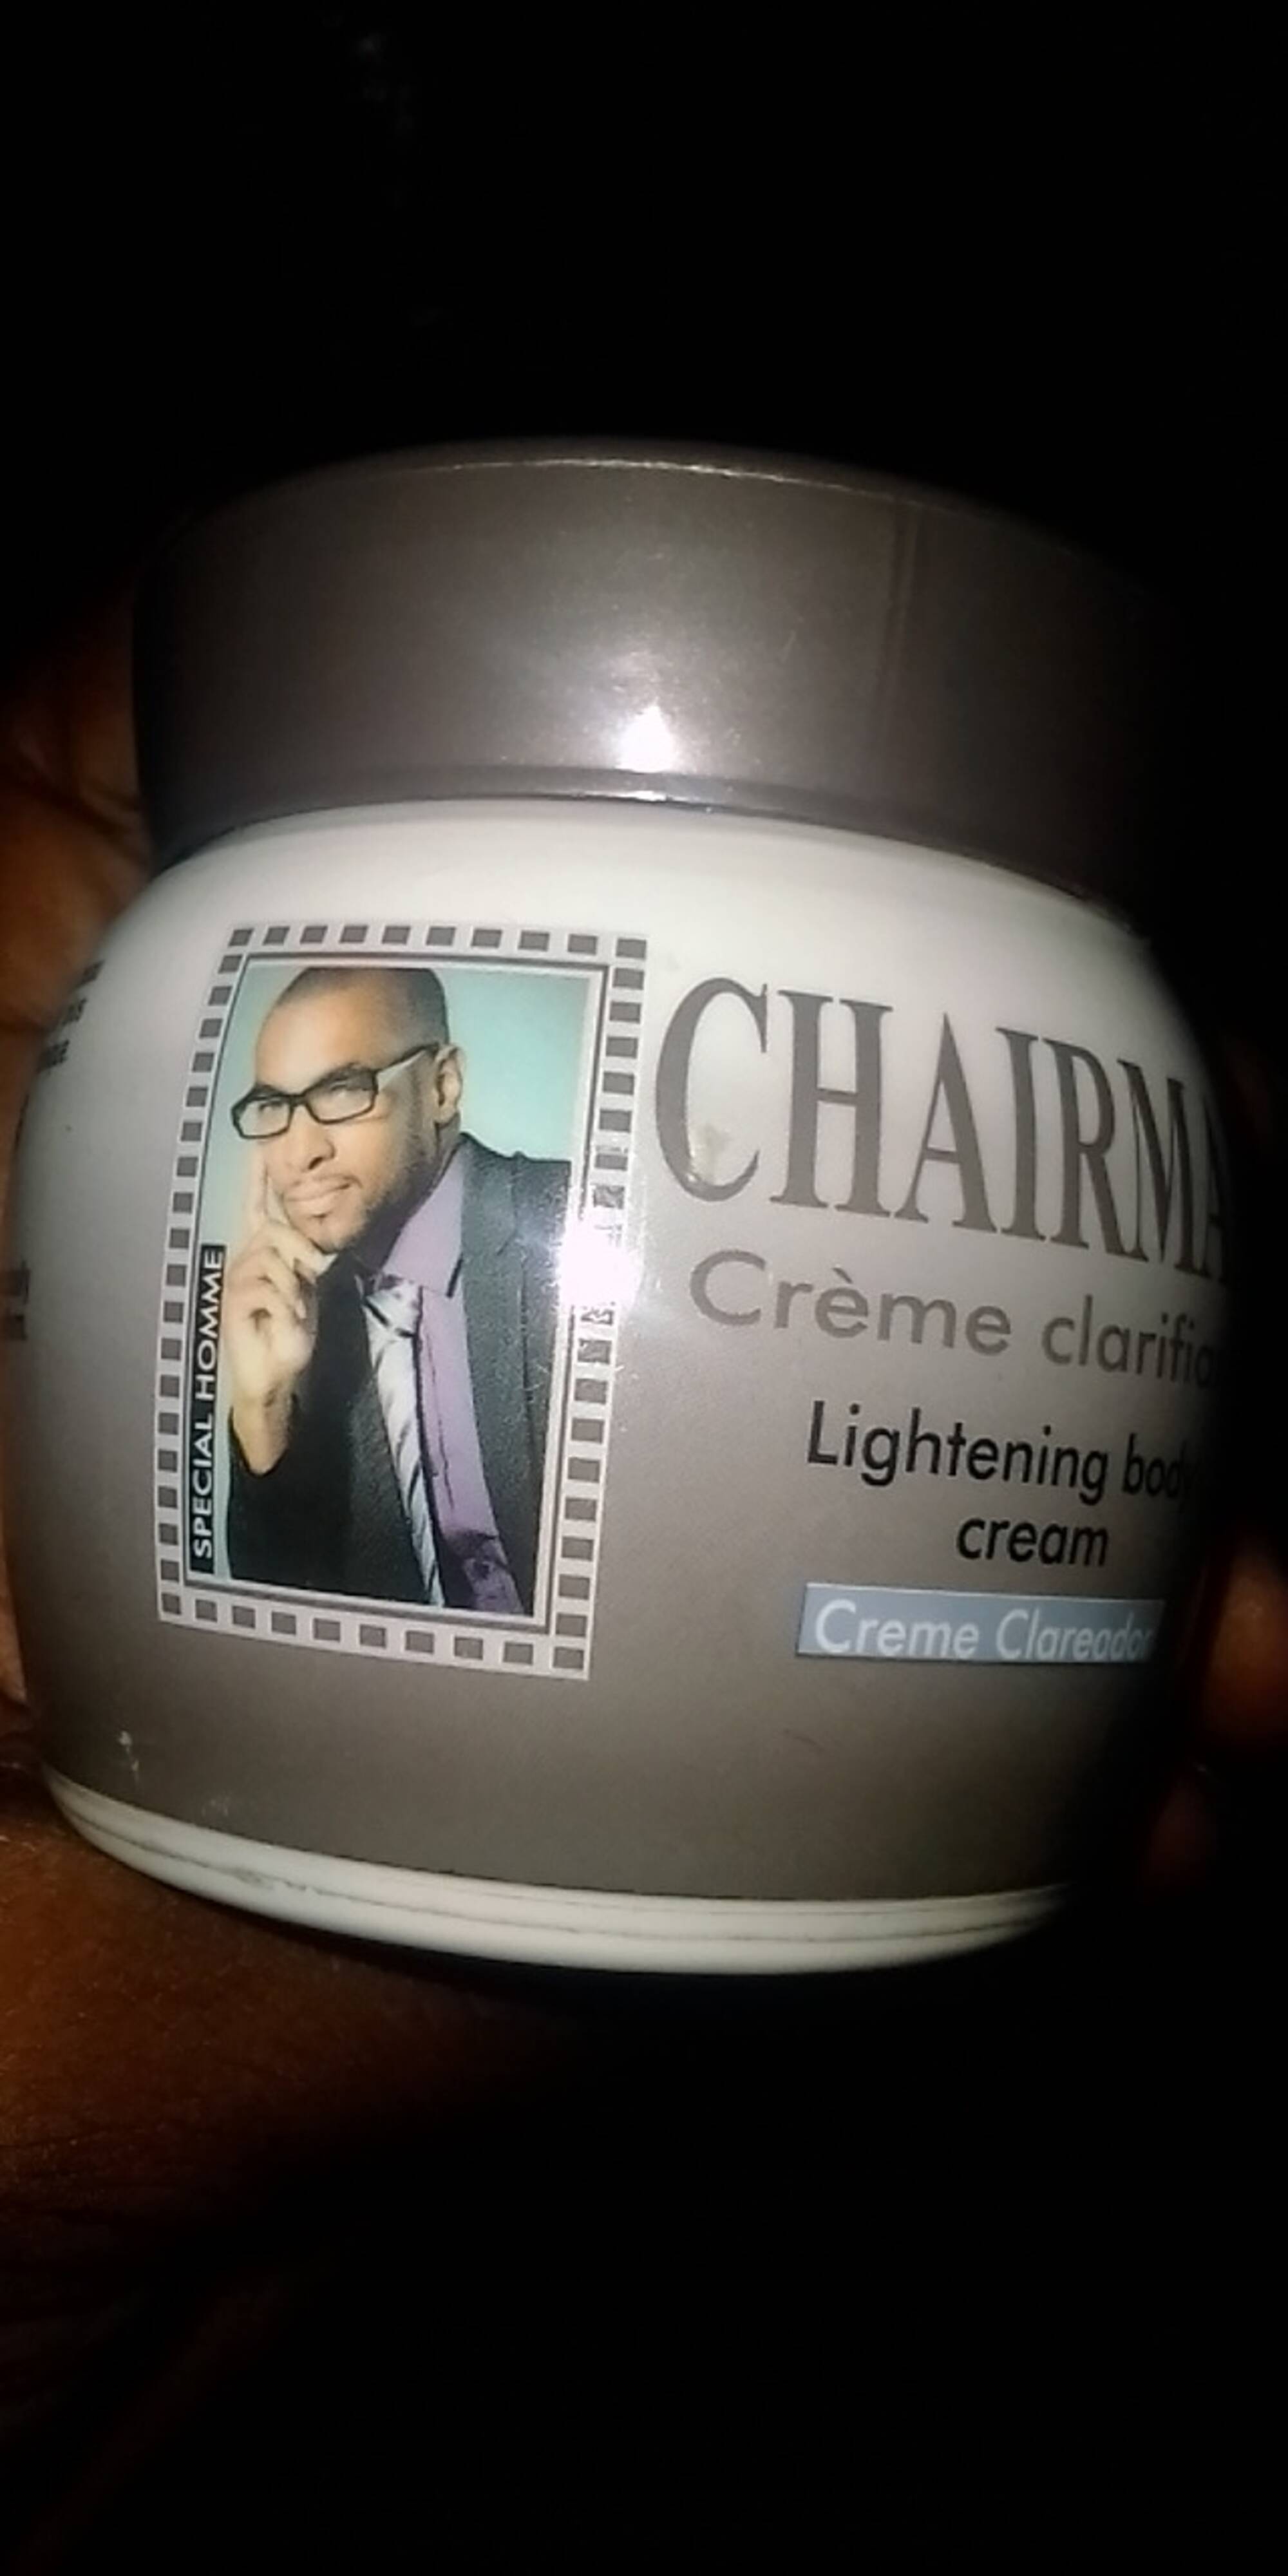 SIVOP - Chairman special homme - Crème clarifiante